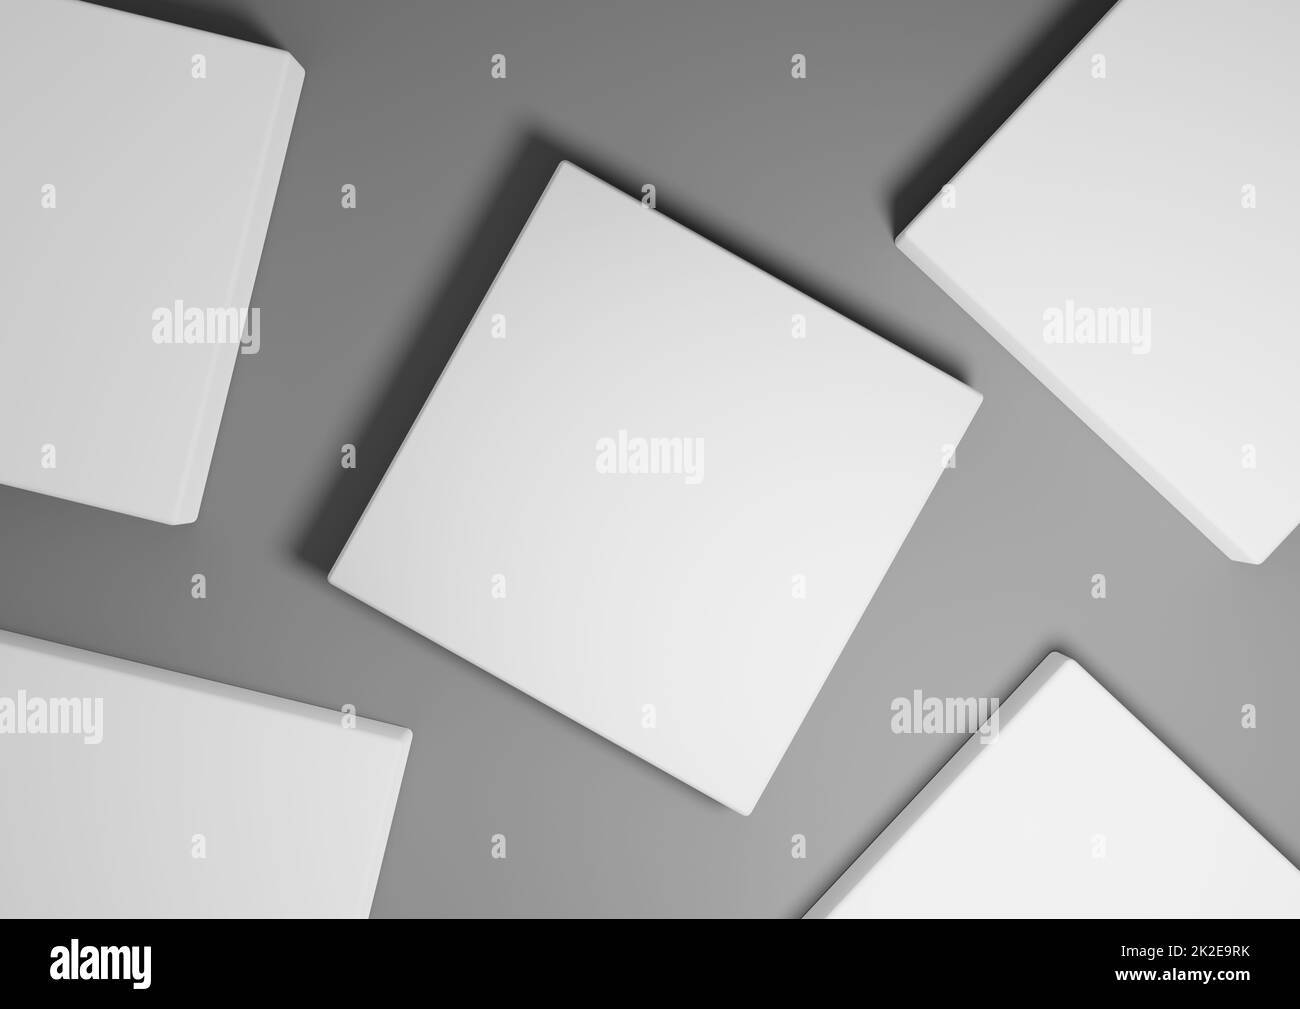 Dunkelgraphitgrau, schwarz und weiß, 3D Rendering minimaler, einfacher Draufsicht flacher Produktdisplay-Hintergrund mit Podestständen und geometrischen Formen Stockfoto